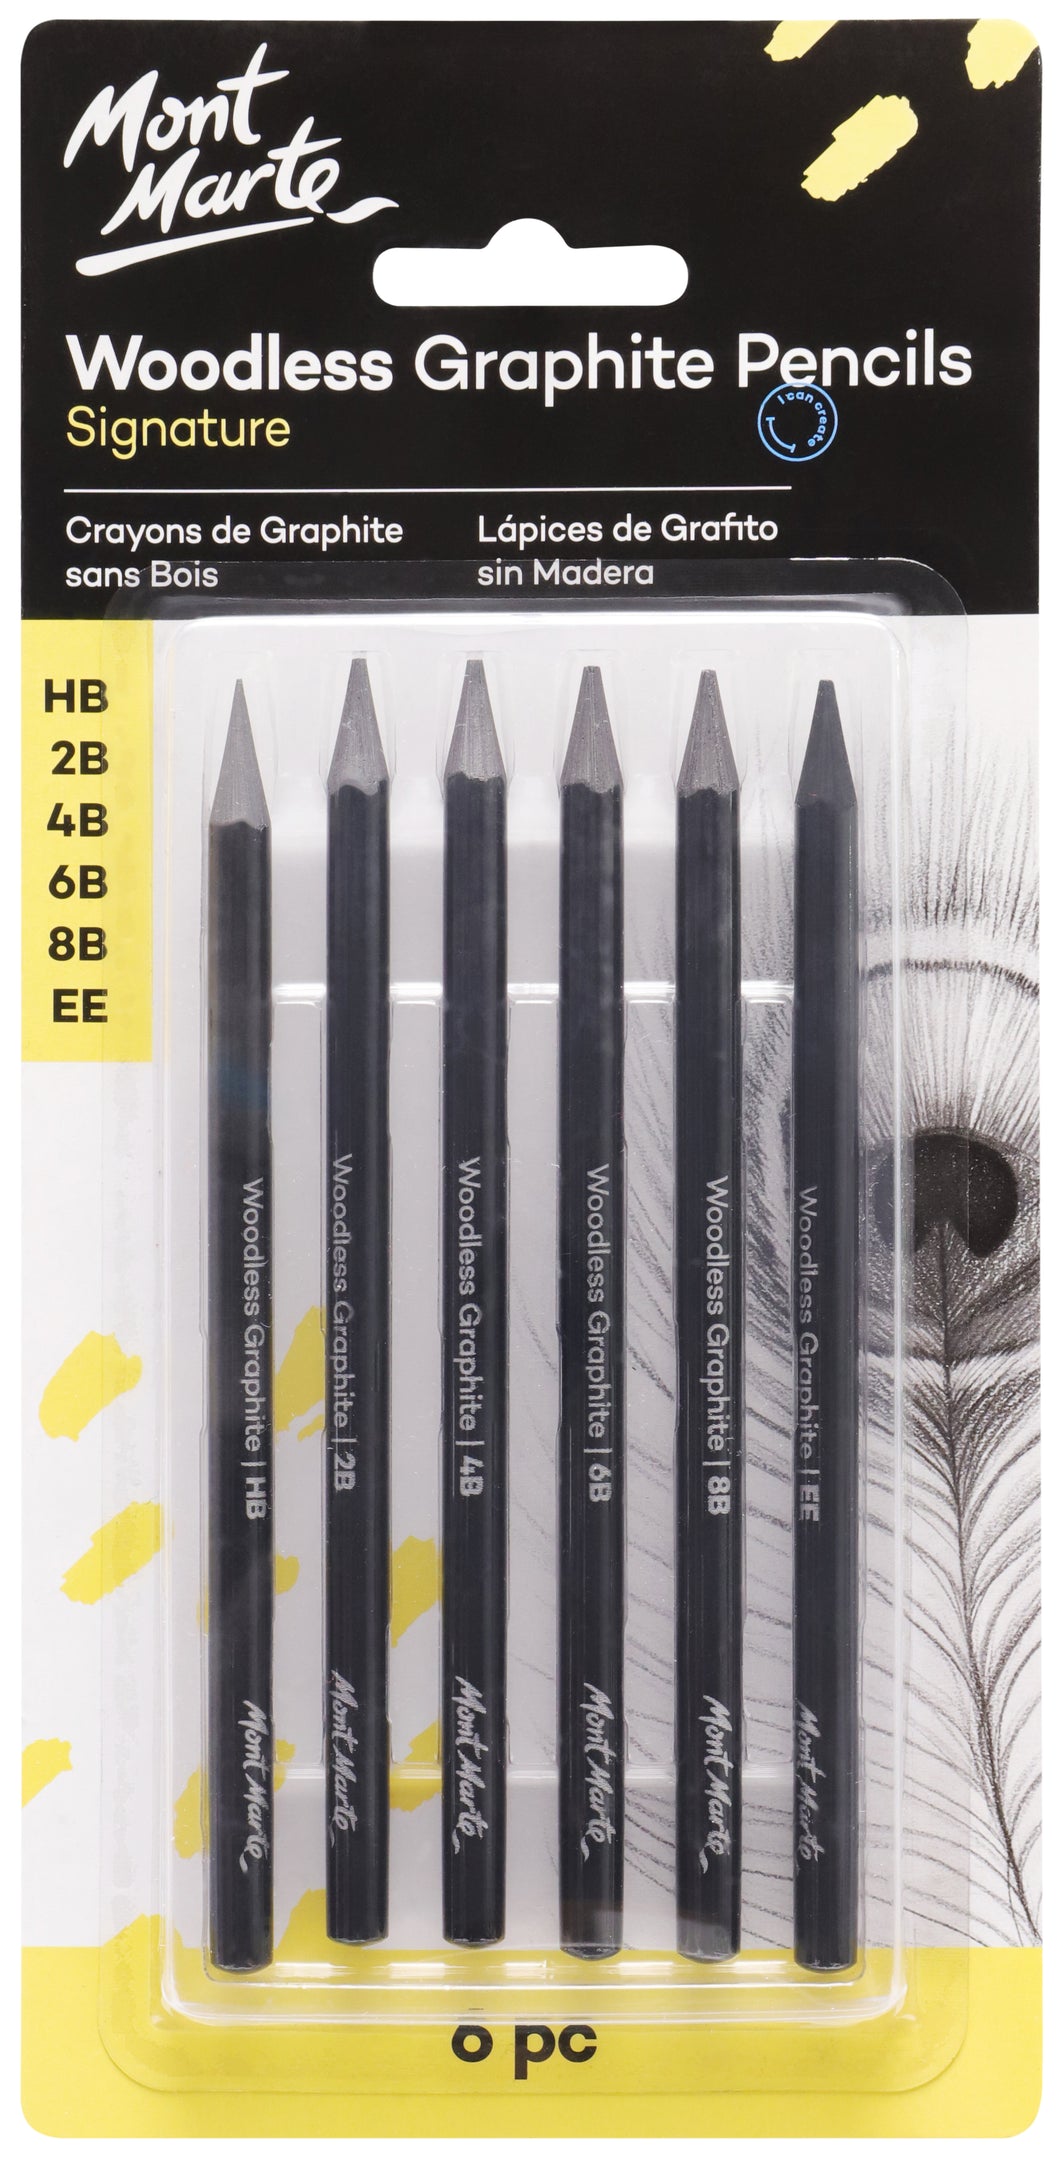 Monte Marte Woodless Graphite Pencils 6pc